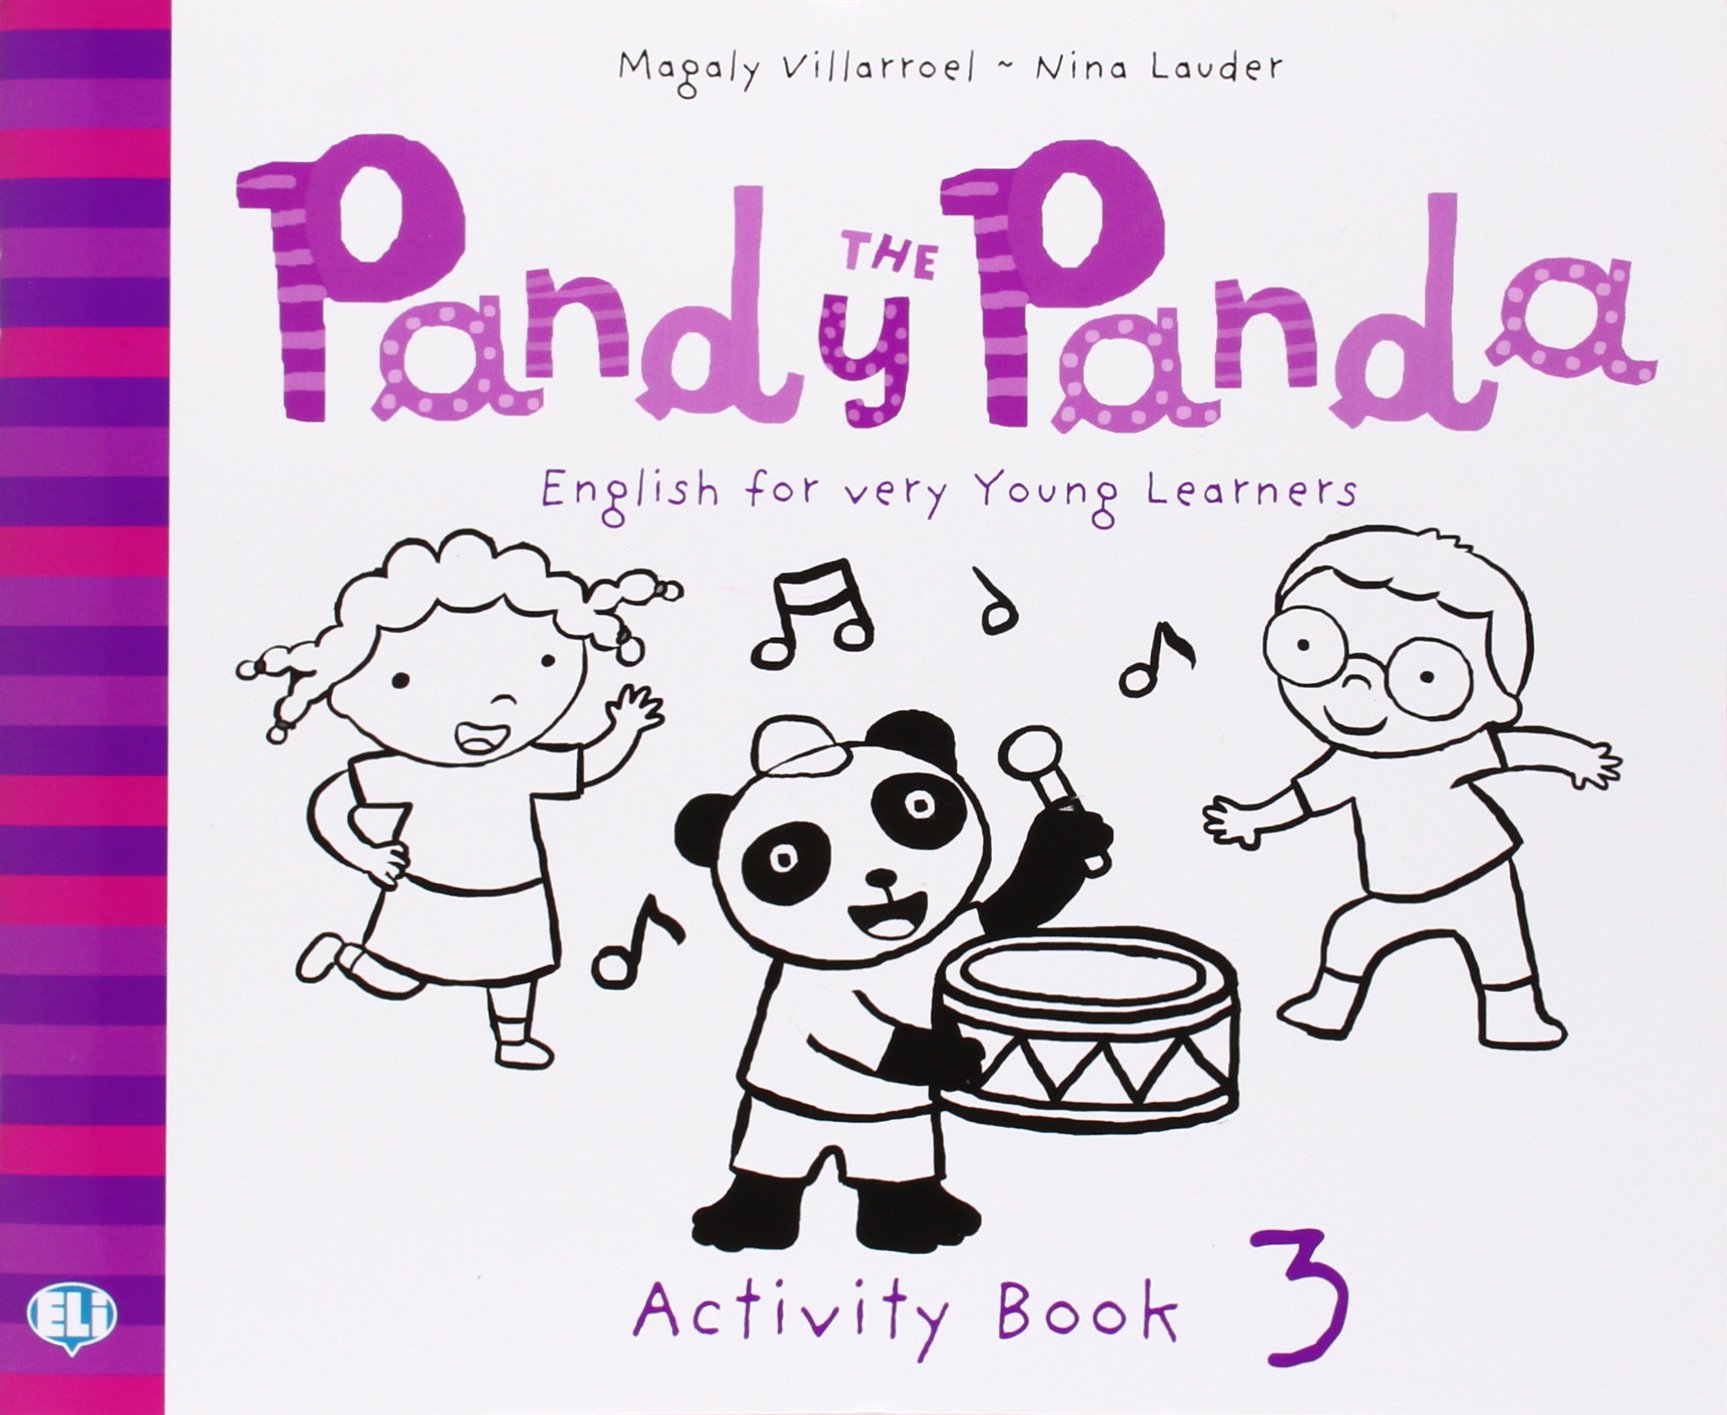 PANDY THE PANDA 3 Activity Book